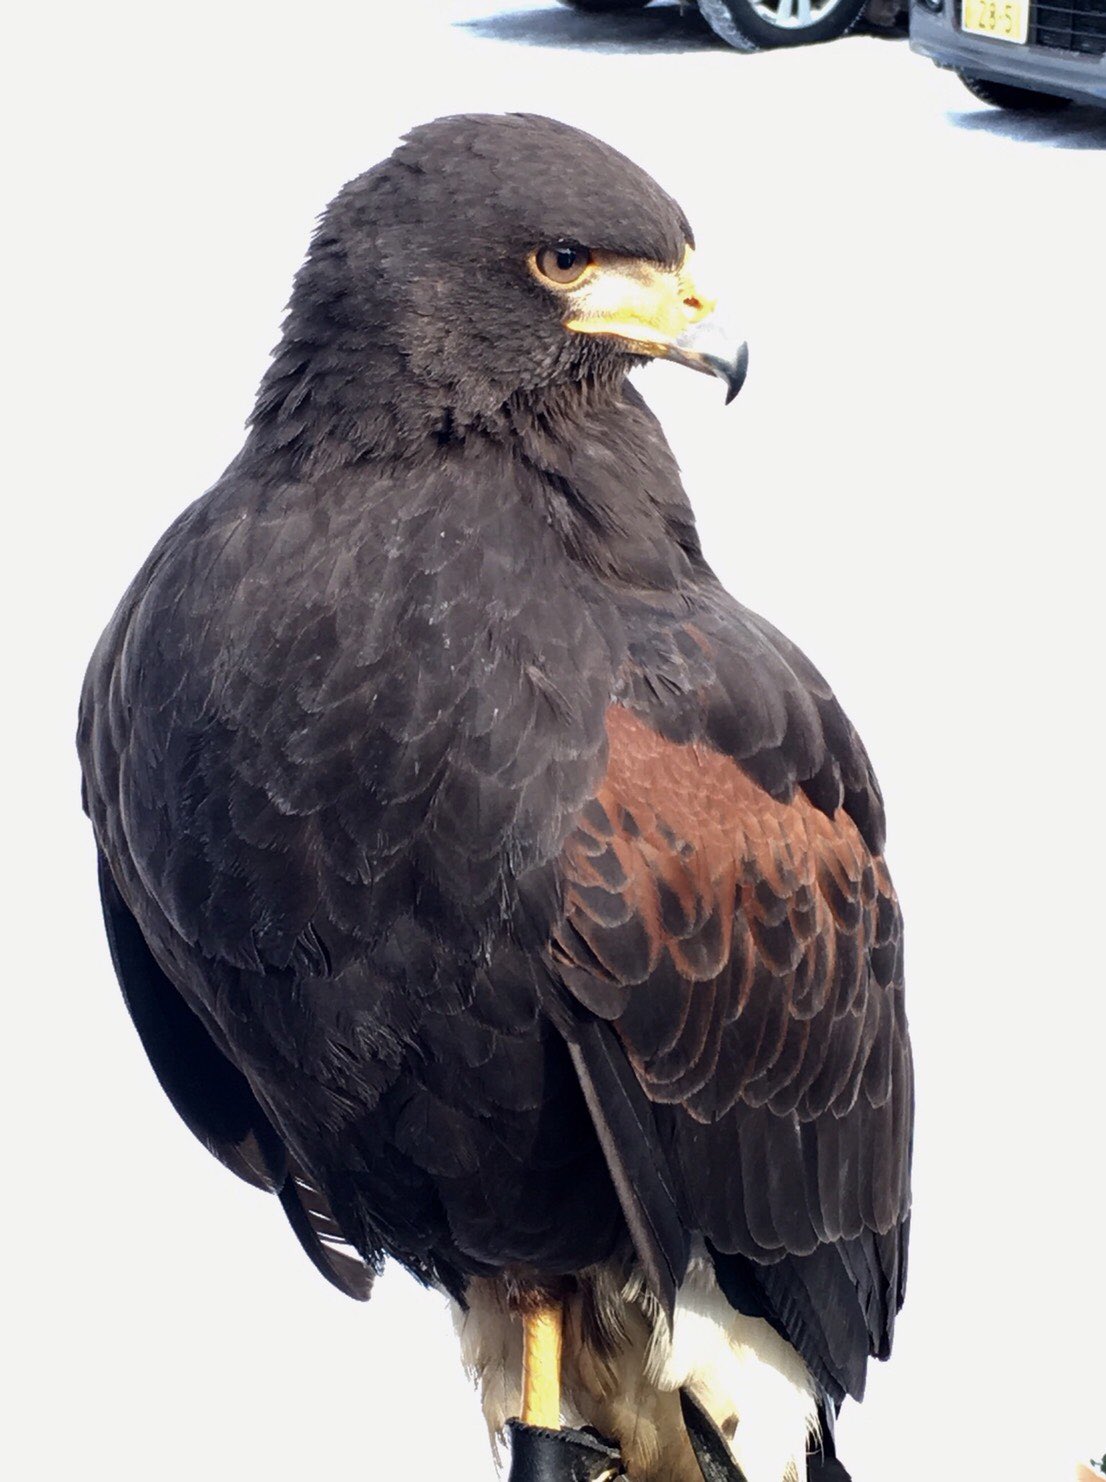 北海道エコ 動物自然専門学校 公式 先日の卒研で鷹のフリーフライトが盛り上がりましたが そのとき活躍したハリスホークのユキちゃんのかっこいい姿を見てください 鷹 猛禽類 T Co Akvpzzp60l Twitter